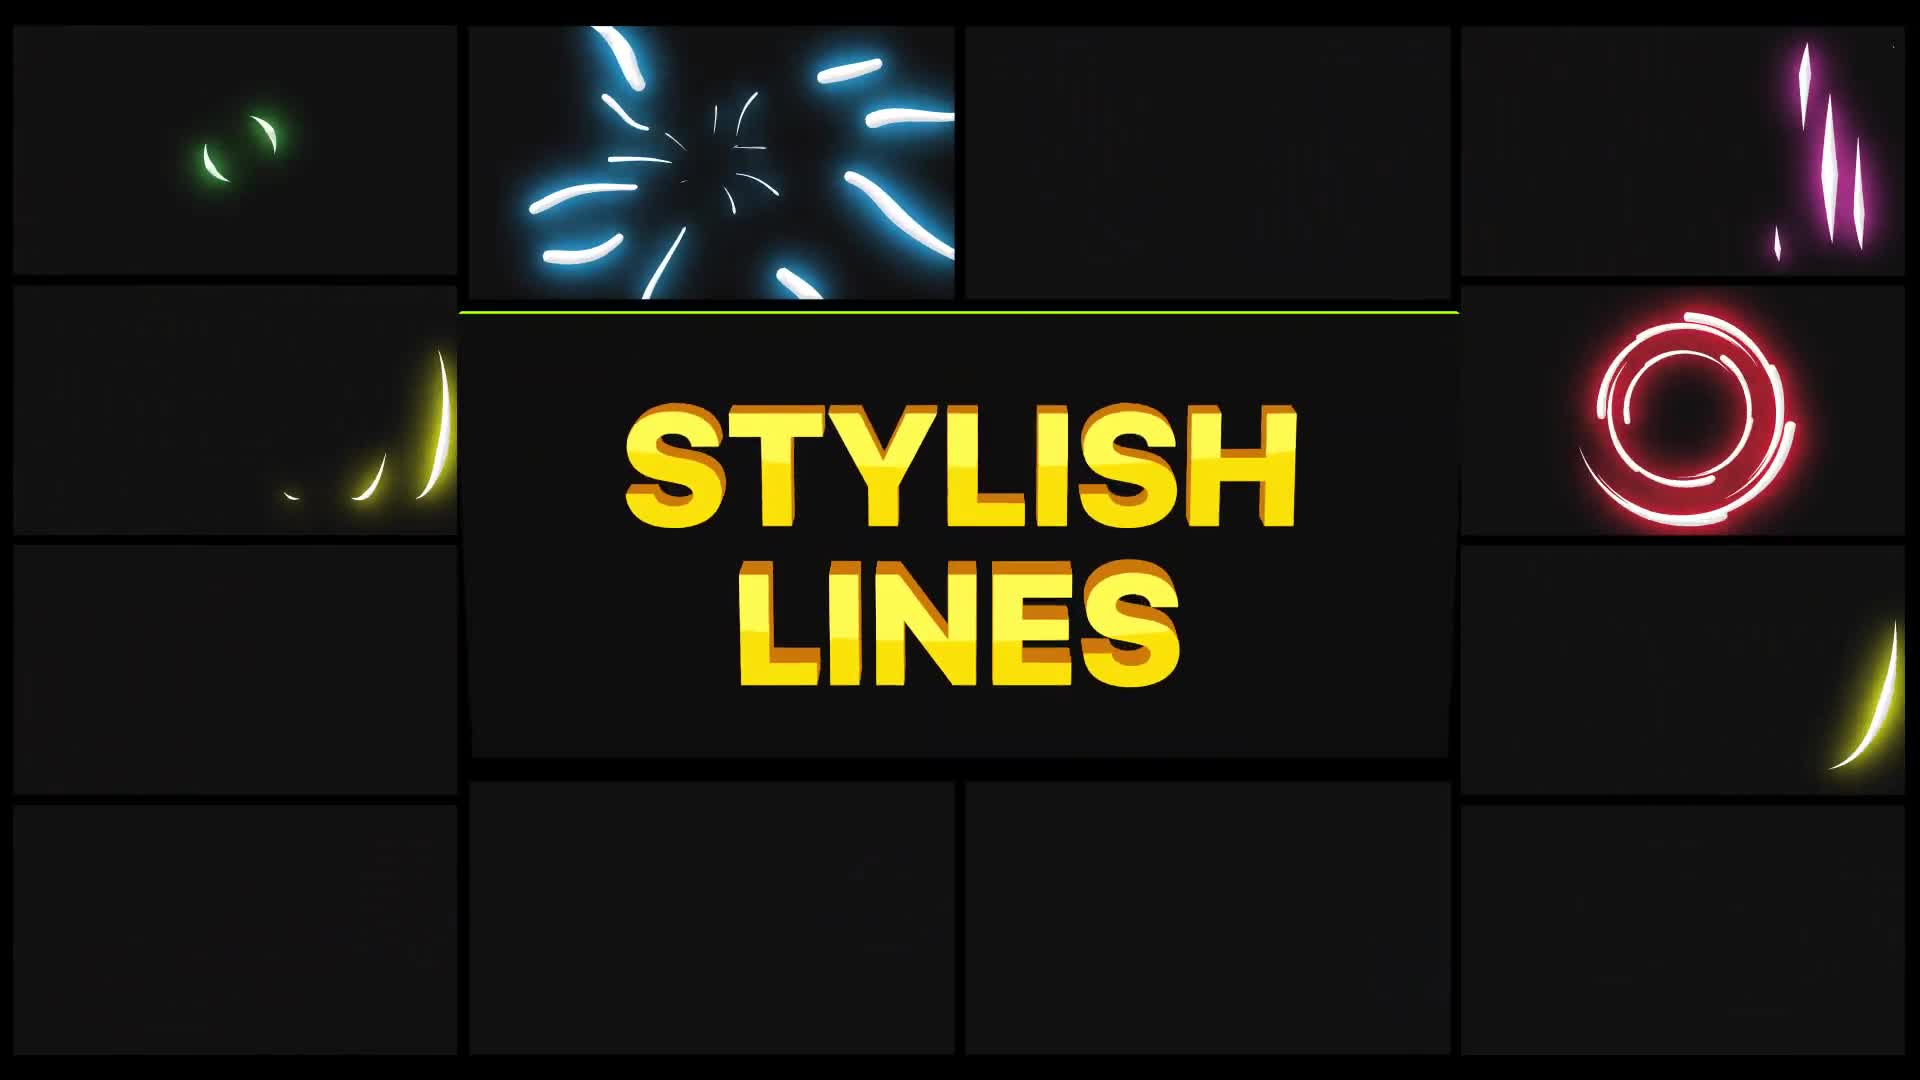 Stylish Lines | Premiere Pro MOGRT Videohive 27989948 Premiere Pro Image 1